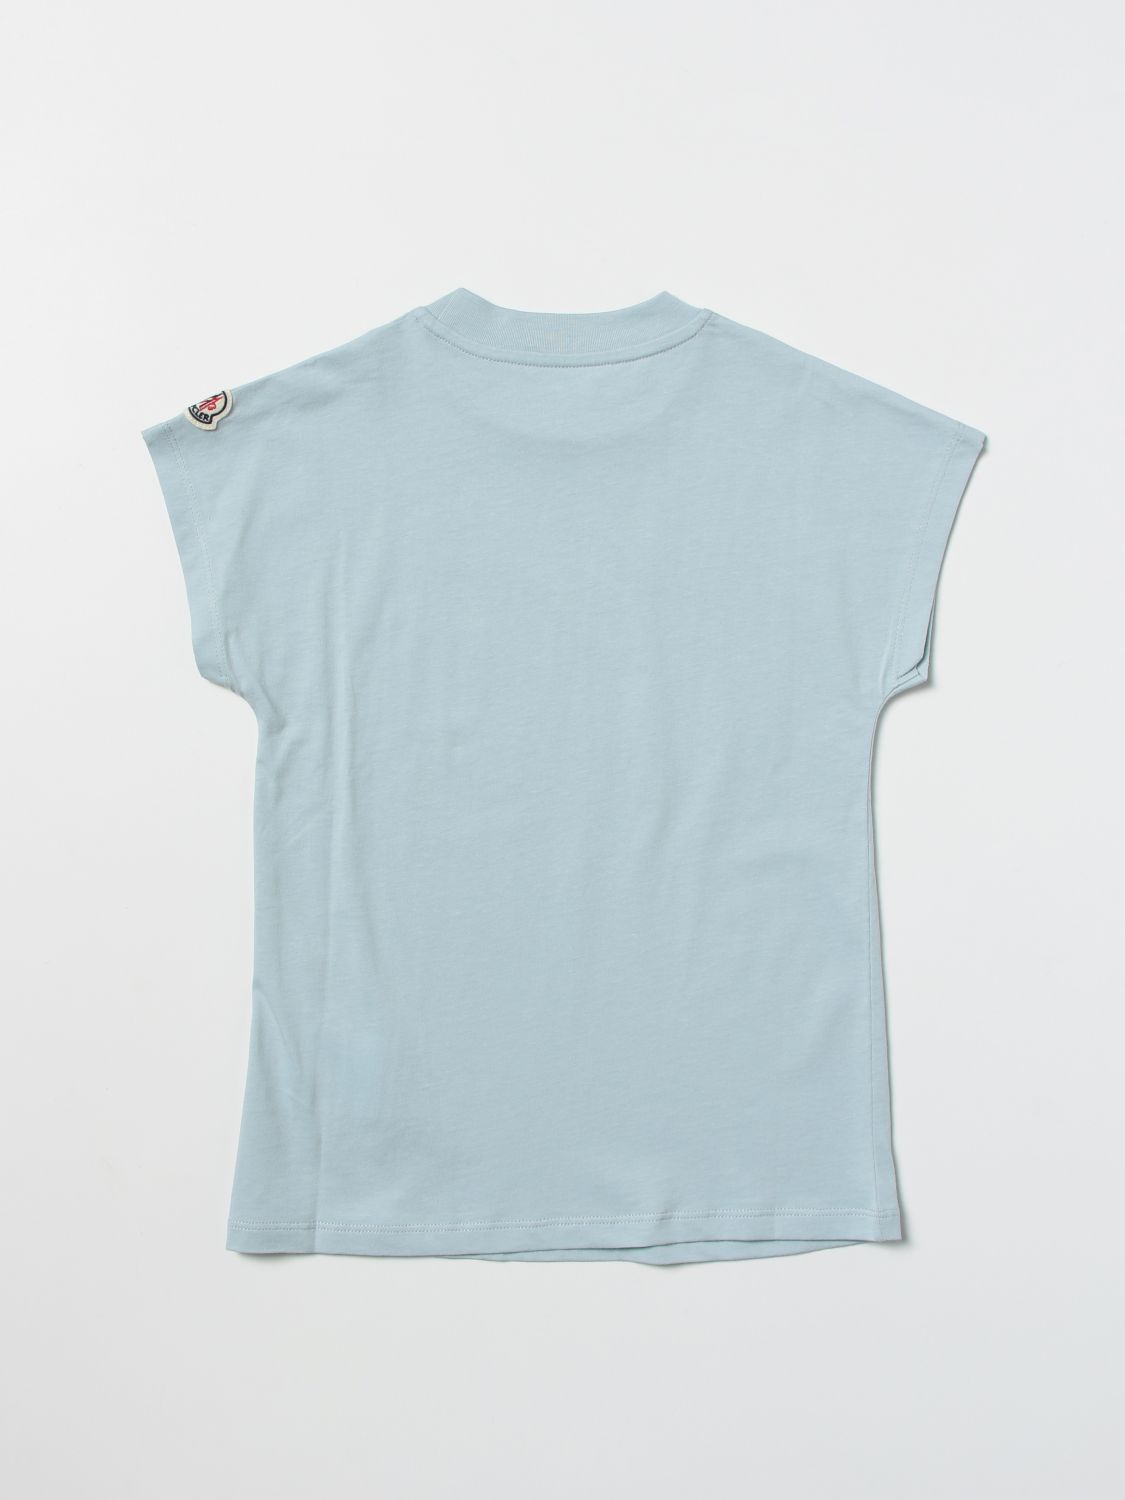 T恤 Moncler: T恤 儿童 Moncler 绿色 2